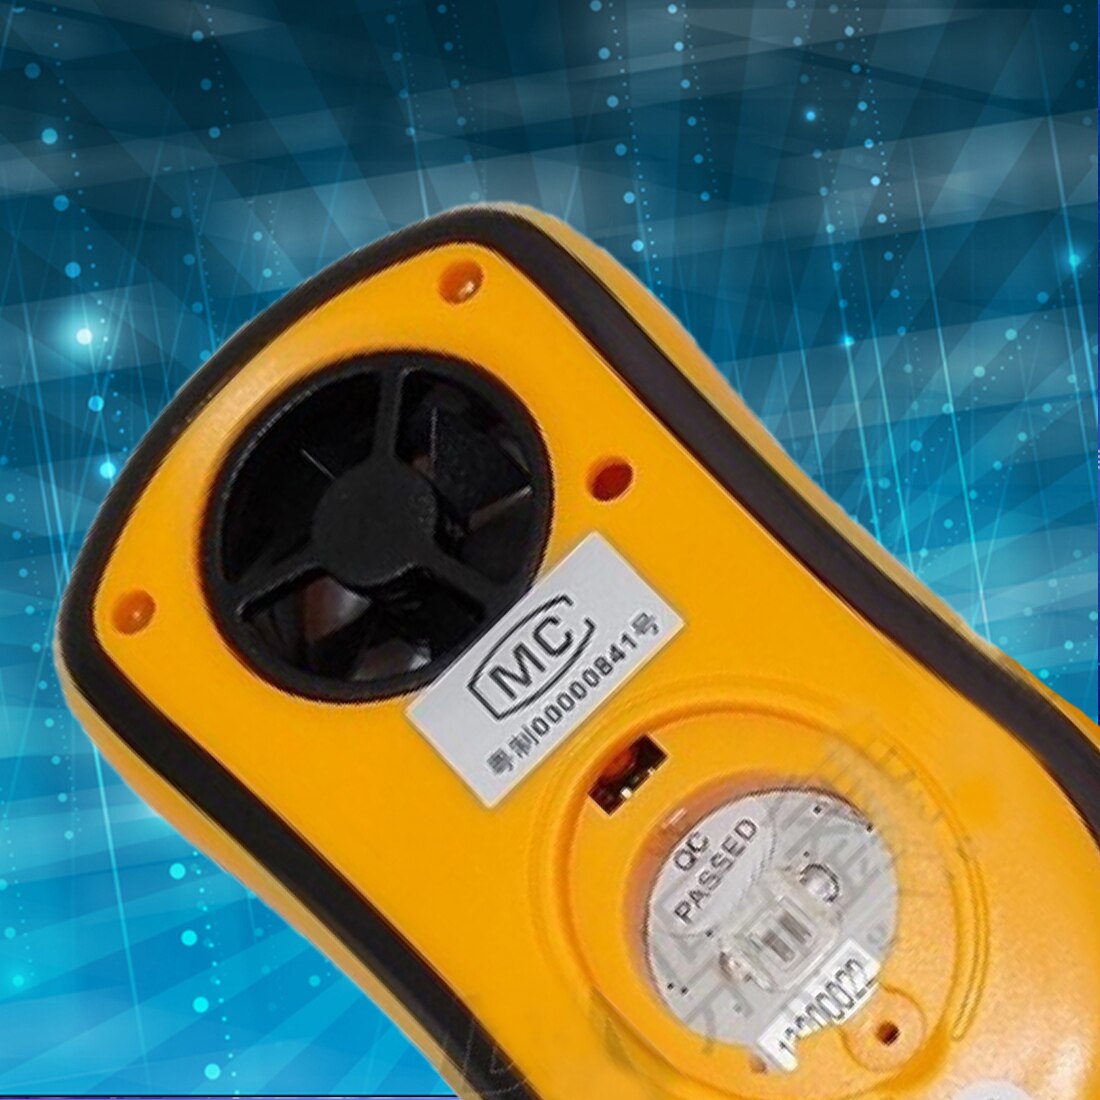 Portable Digital Anemometer for Measuring Wind Speed Handheld Wind Speed Meter with Backlight Wind Speed Gauge Meter